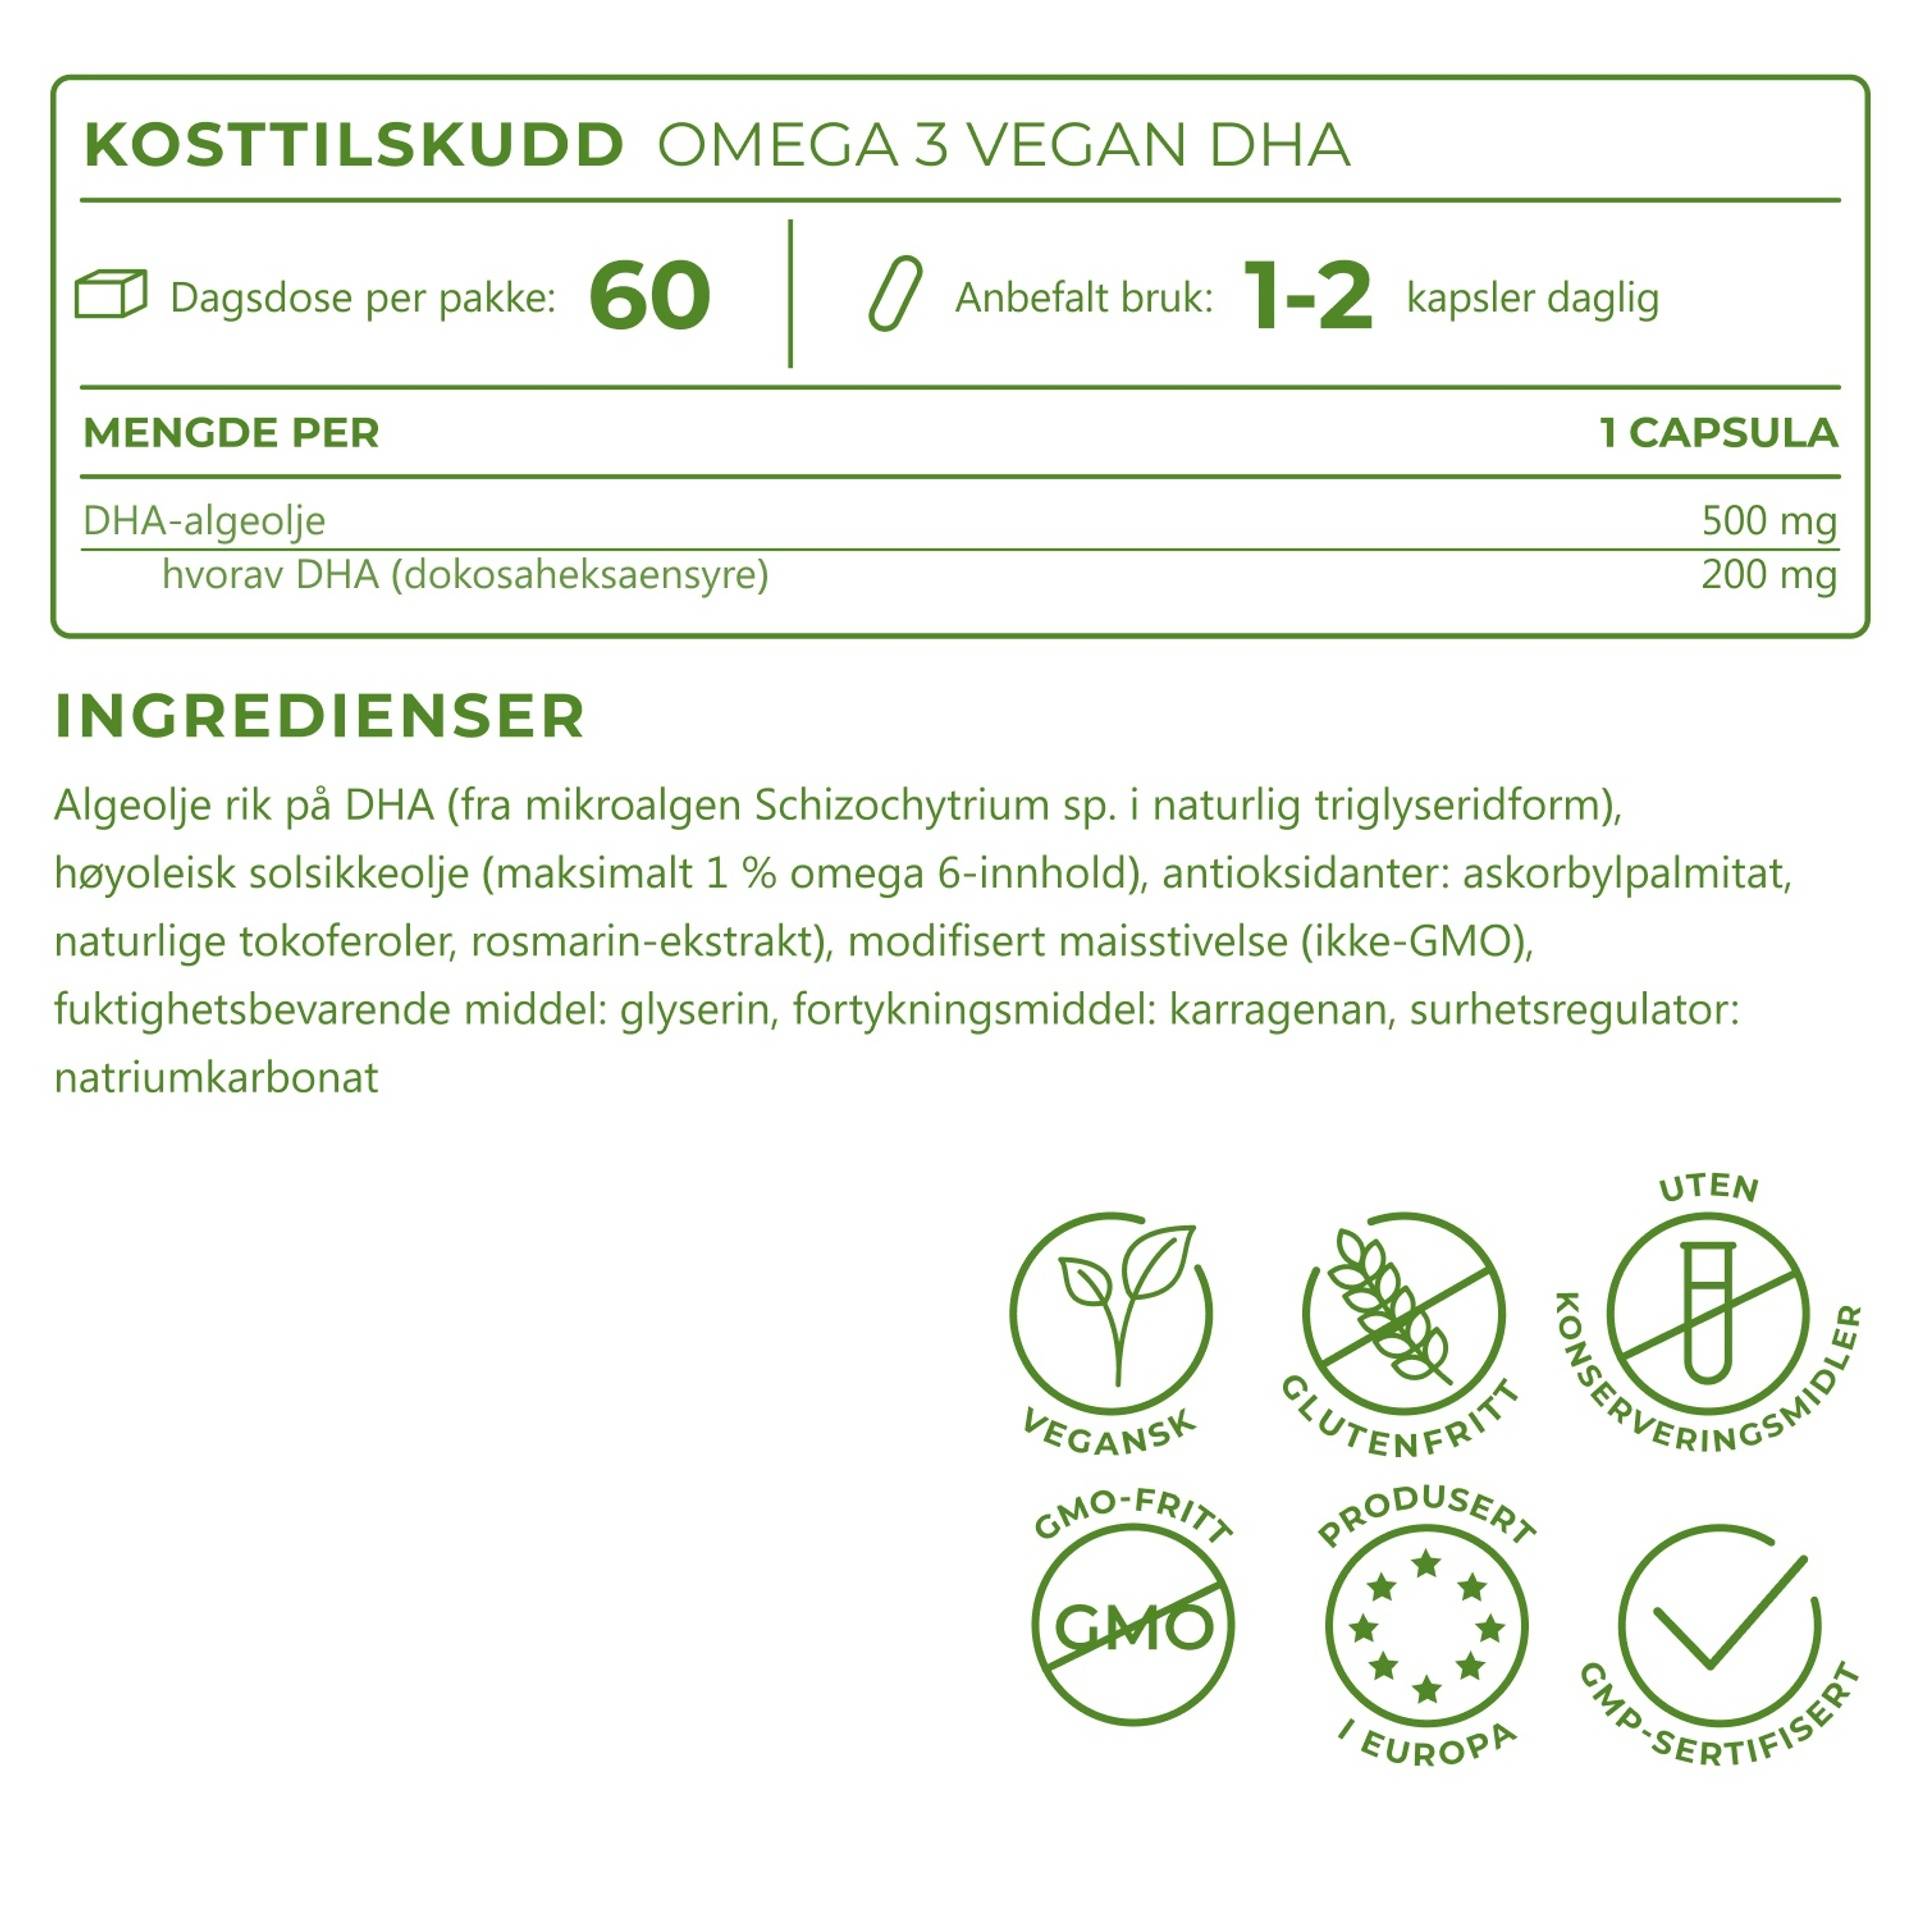 5_NO_Ingredients_Omega-3-vegan-DHA_6850-11.png